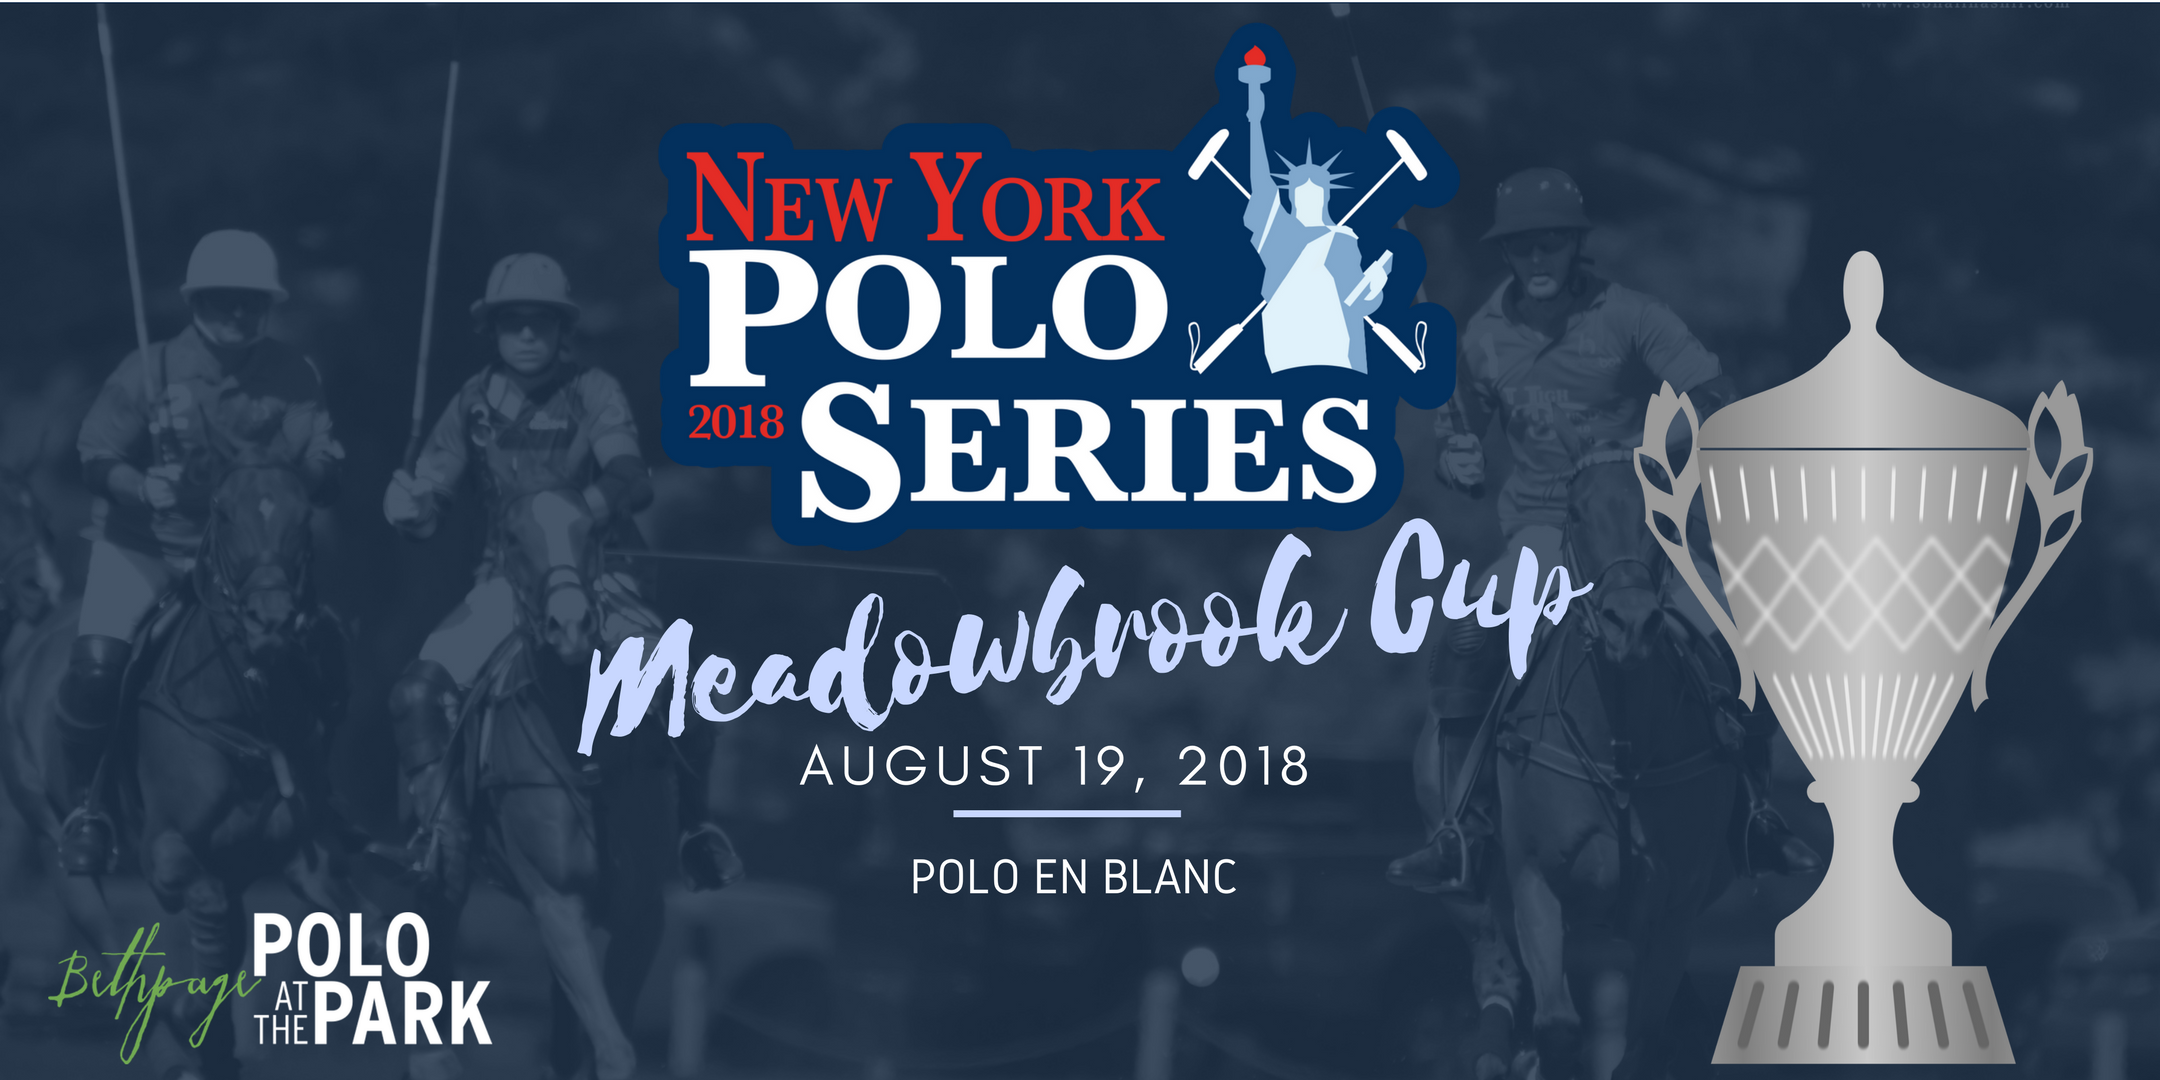 New York Polo Series (Meadowbrook Cup - Polo En Blanc 8/19)